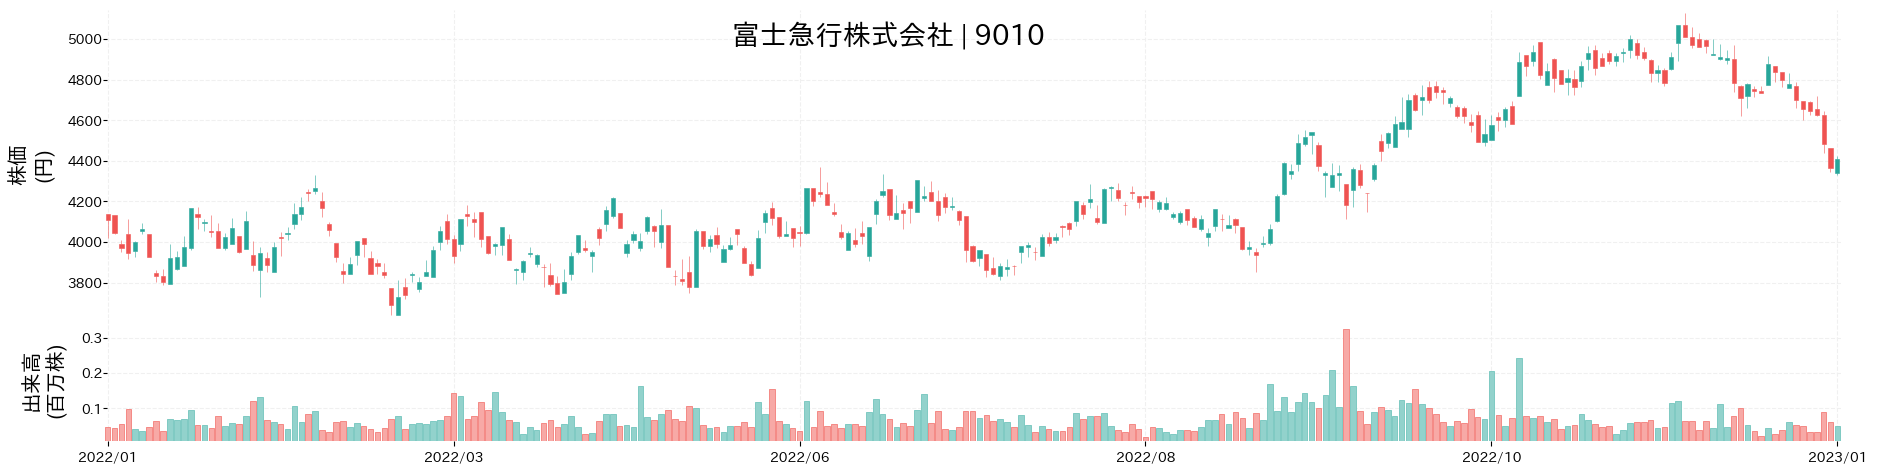 富士急行の株価推移(2022)